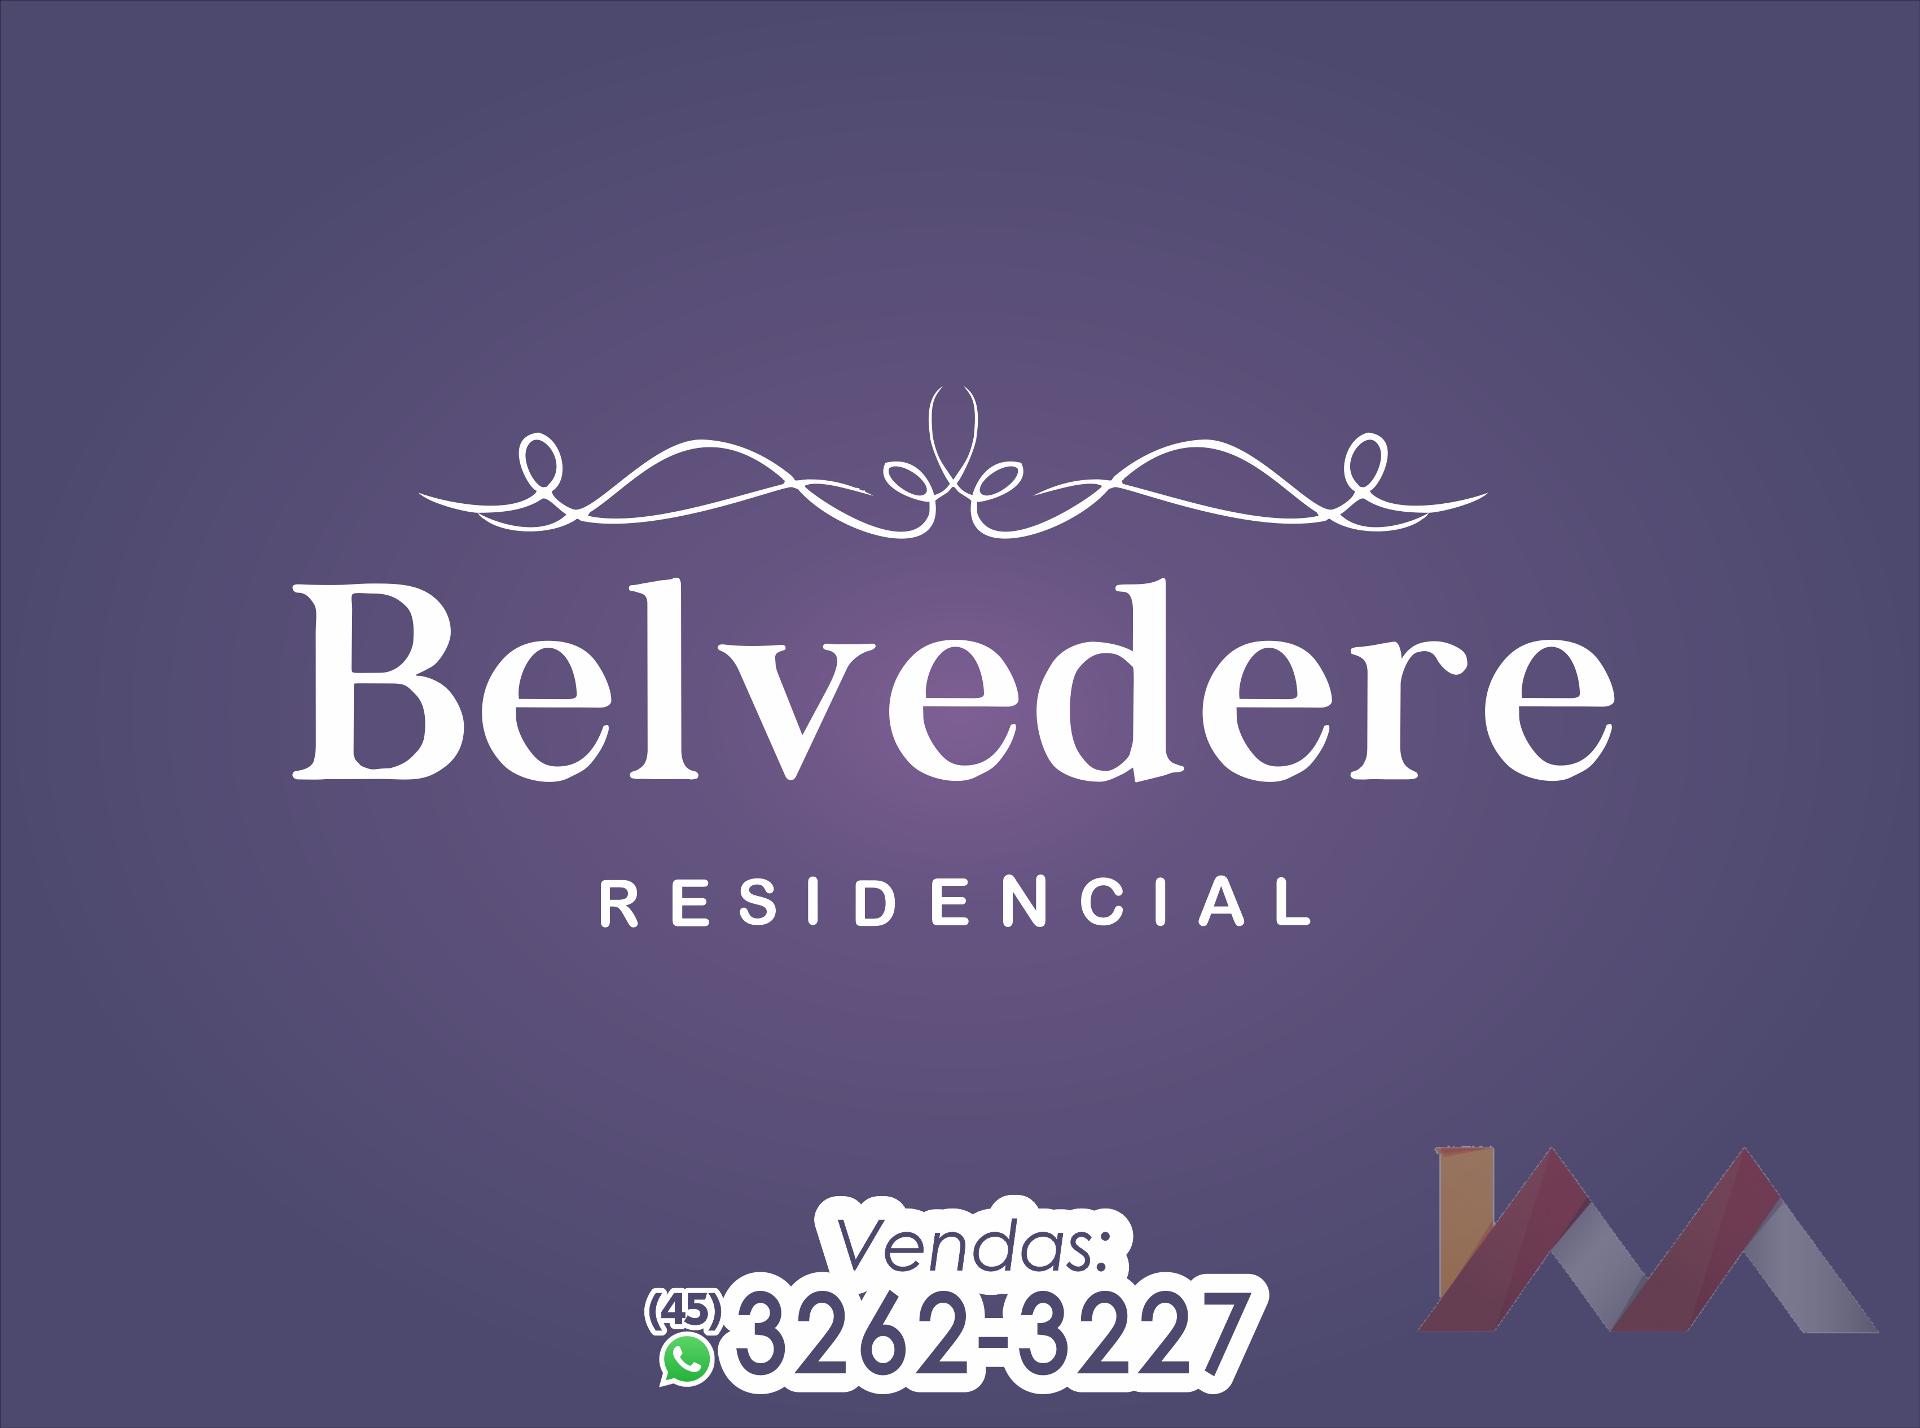 Apartamento 305 do Residencial Belvedere